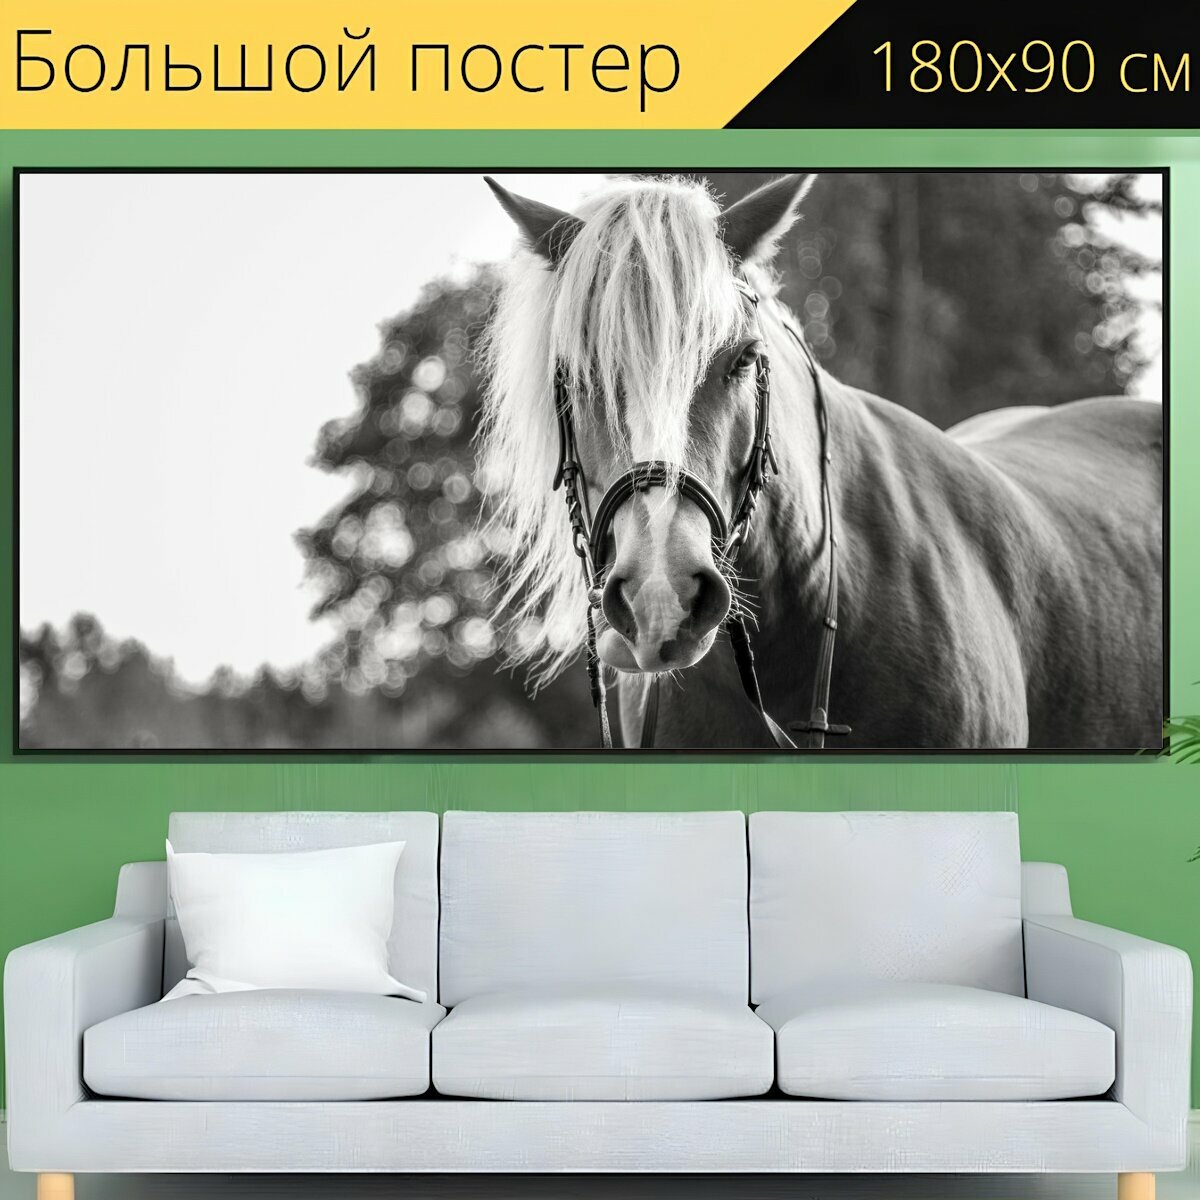 Большой постер "Лошадь, езда на лошади, лошади" 180 x 90 см. для интерьера